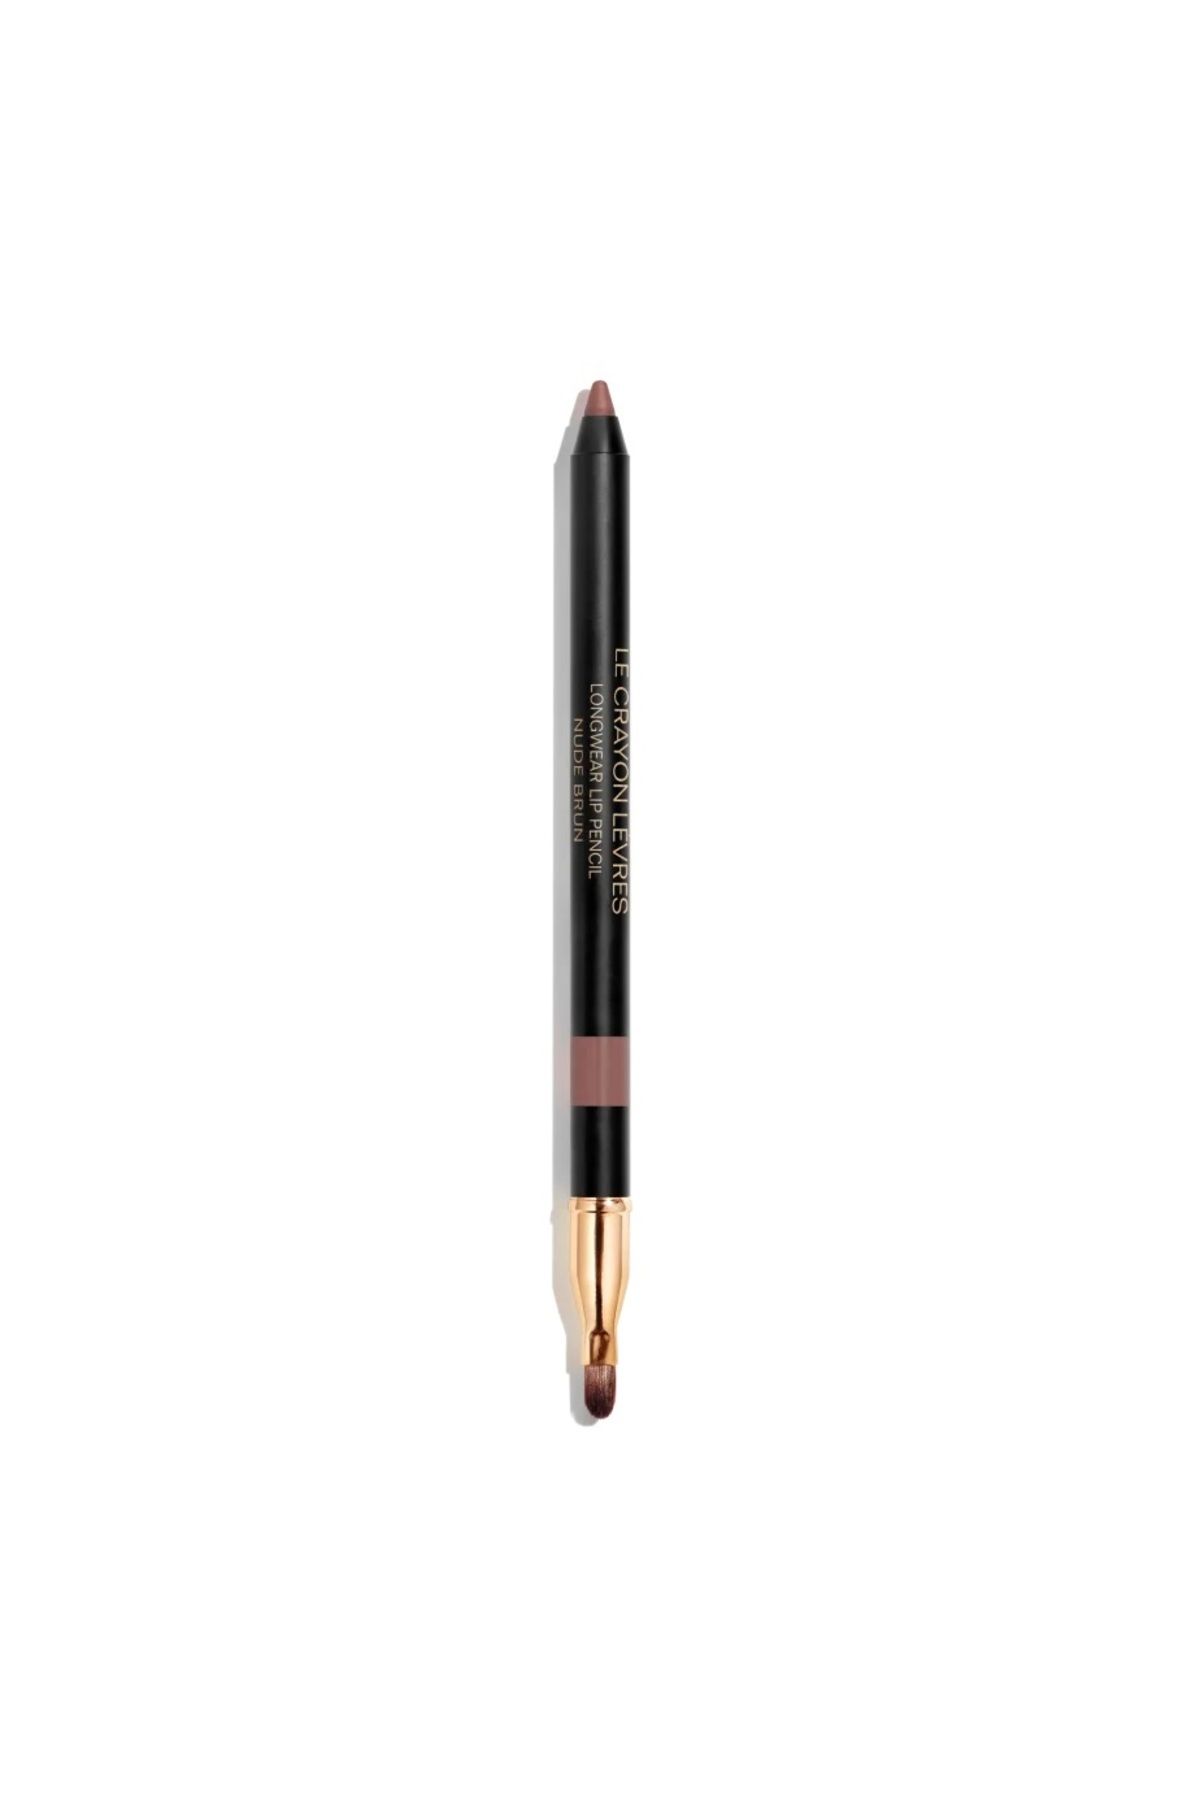 Chanel LE CRAYON LÈVRES - Ultra Uzun Süre Kalıcı Belirginleştirici Yarı Mat Bitişli Dudak Kalemi